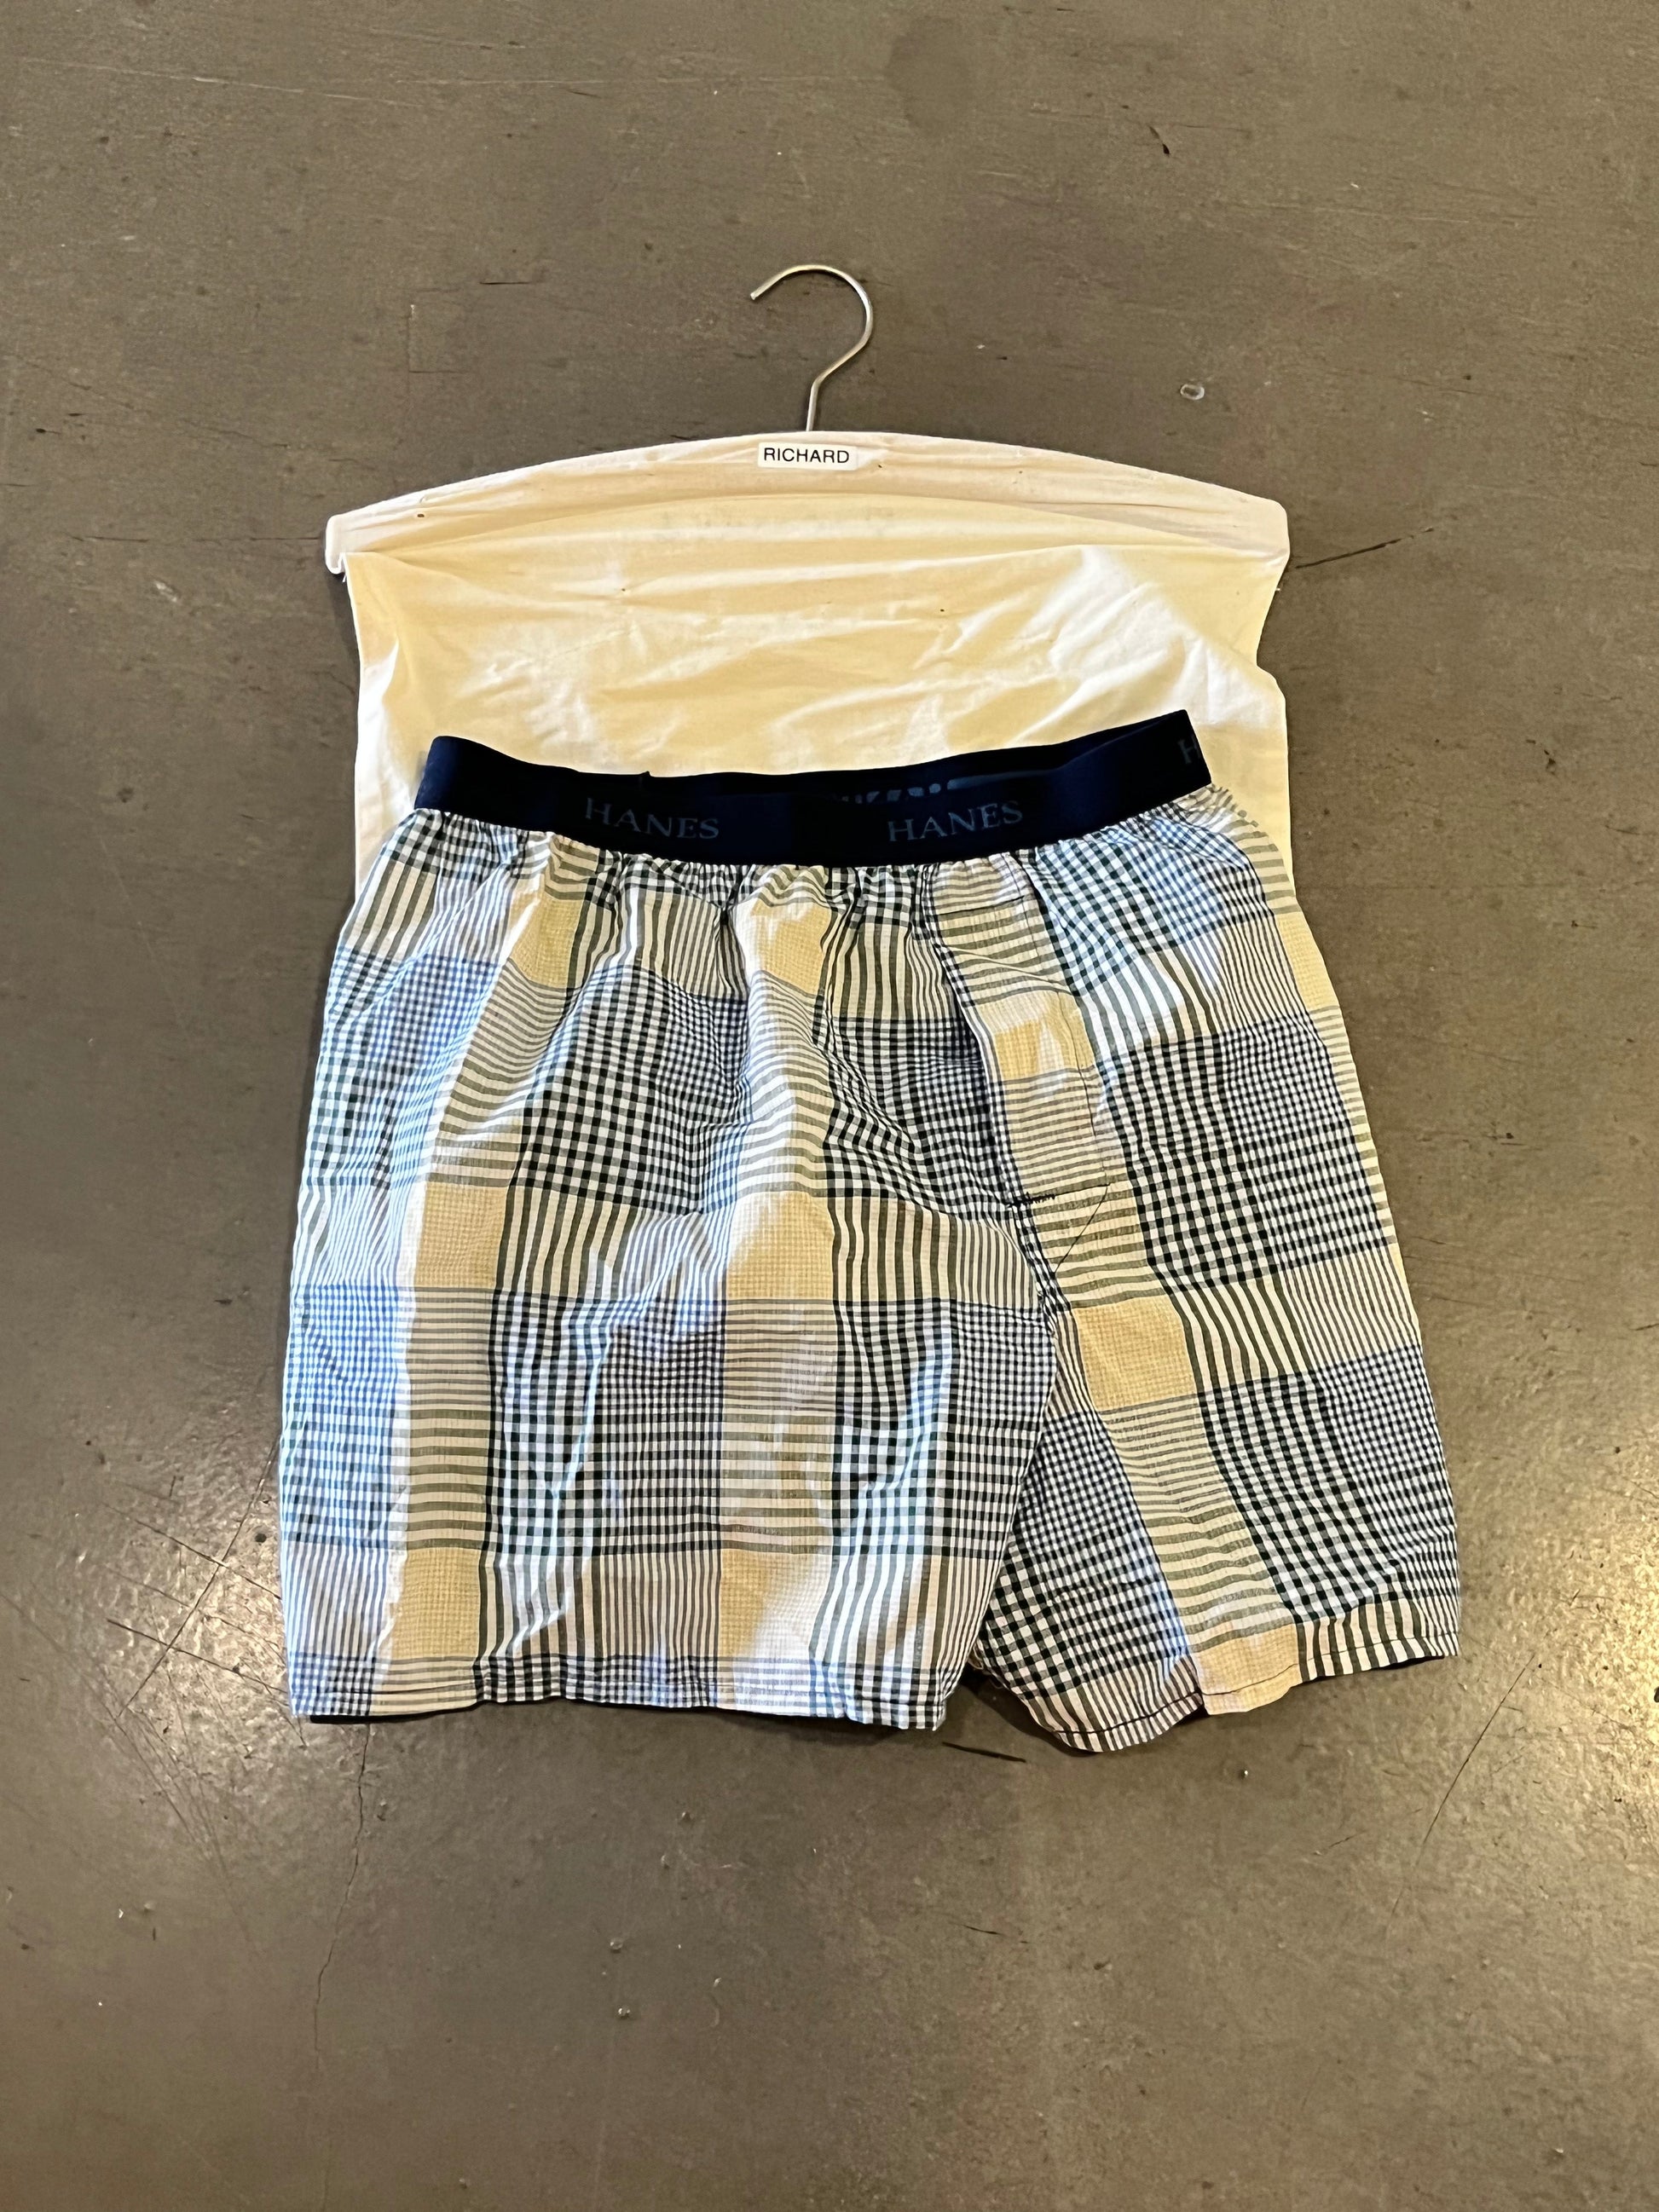 SILICON VALLEY: Richard's Boxer Short Underwear